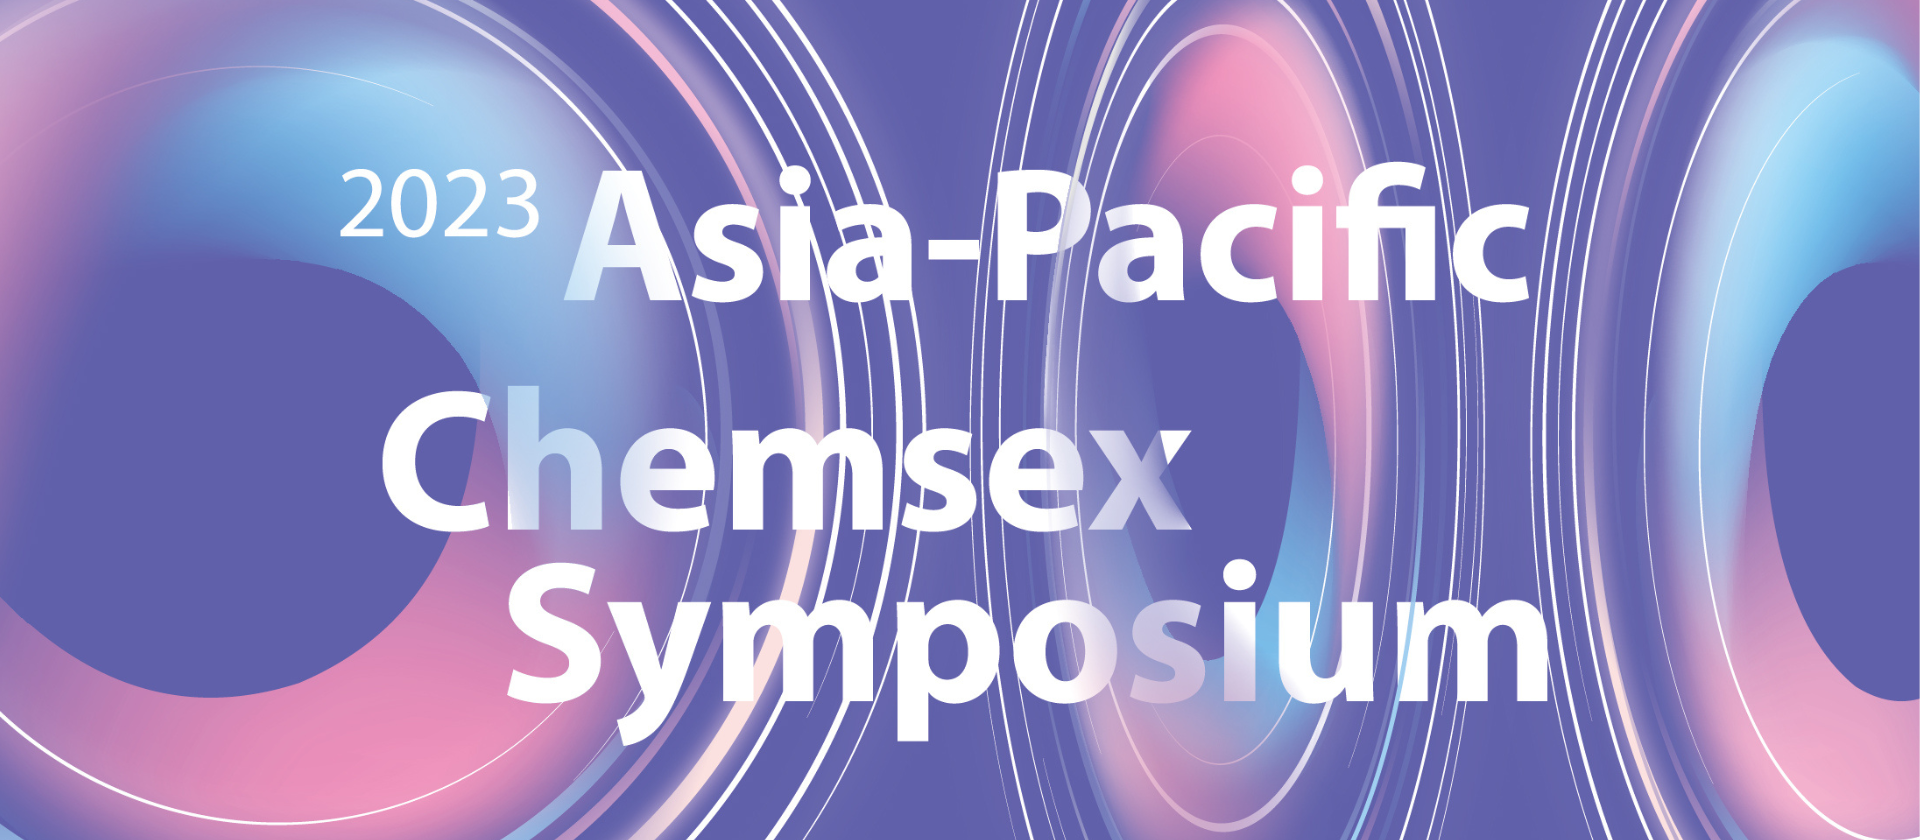 「2023 亞太藥愛國際研討會」報名開放通知 Registration Open for the "2023 Asia-Pacific Chemsex Symposium"